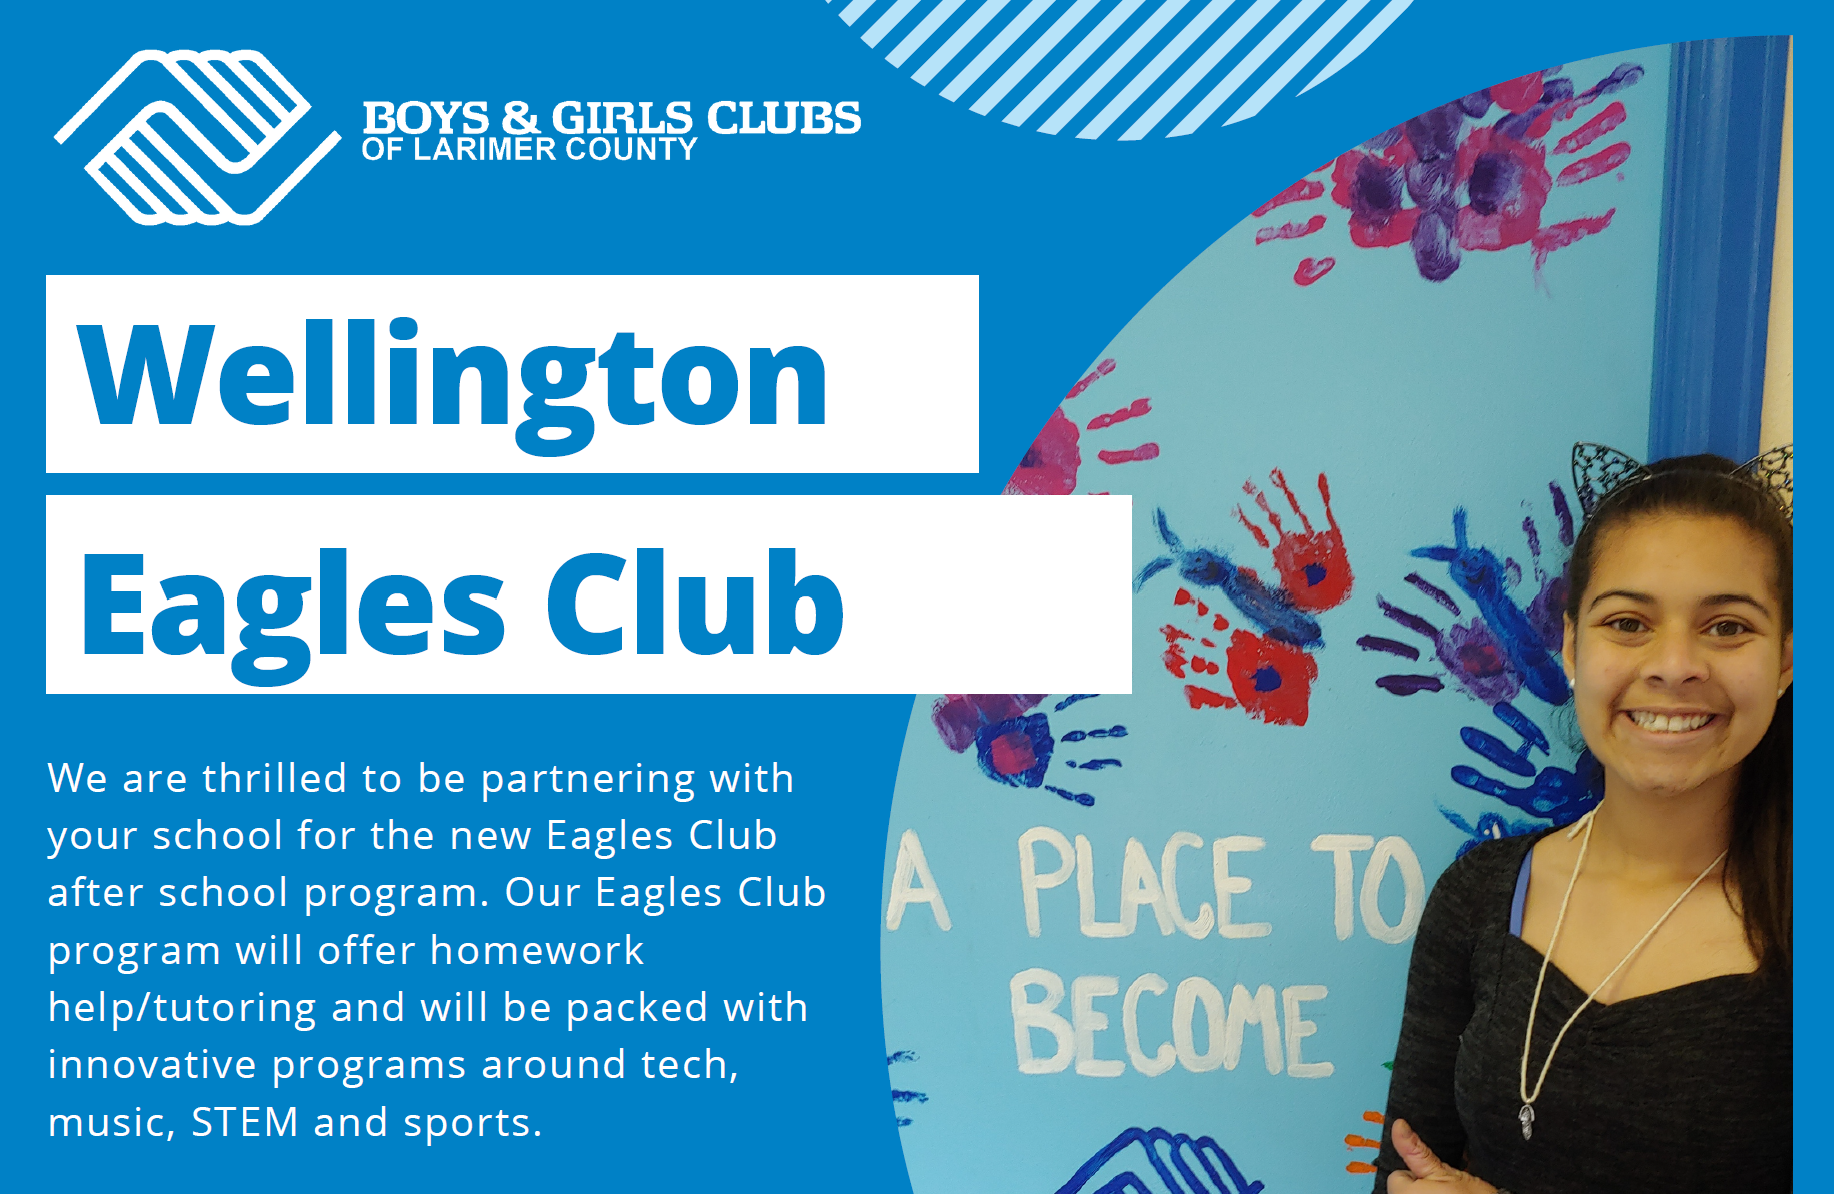 Eagles Club in Partnership with Boys & Girls Club